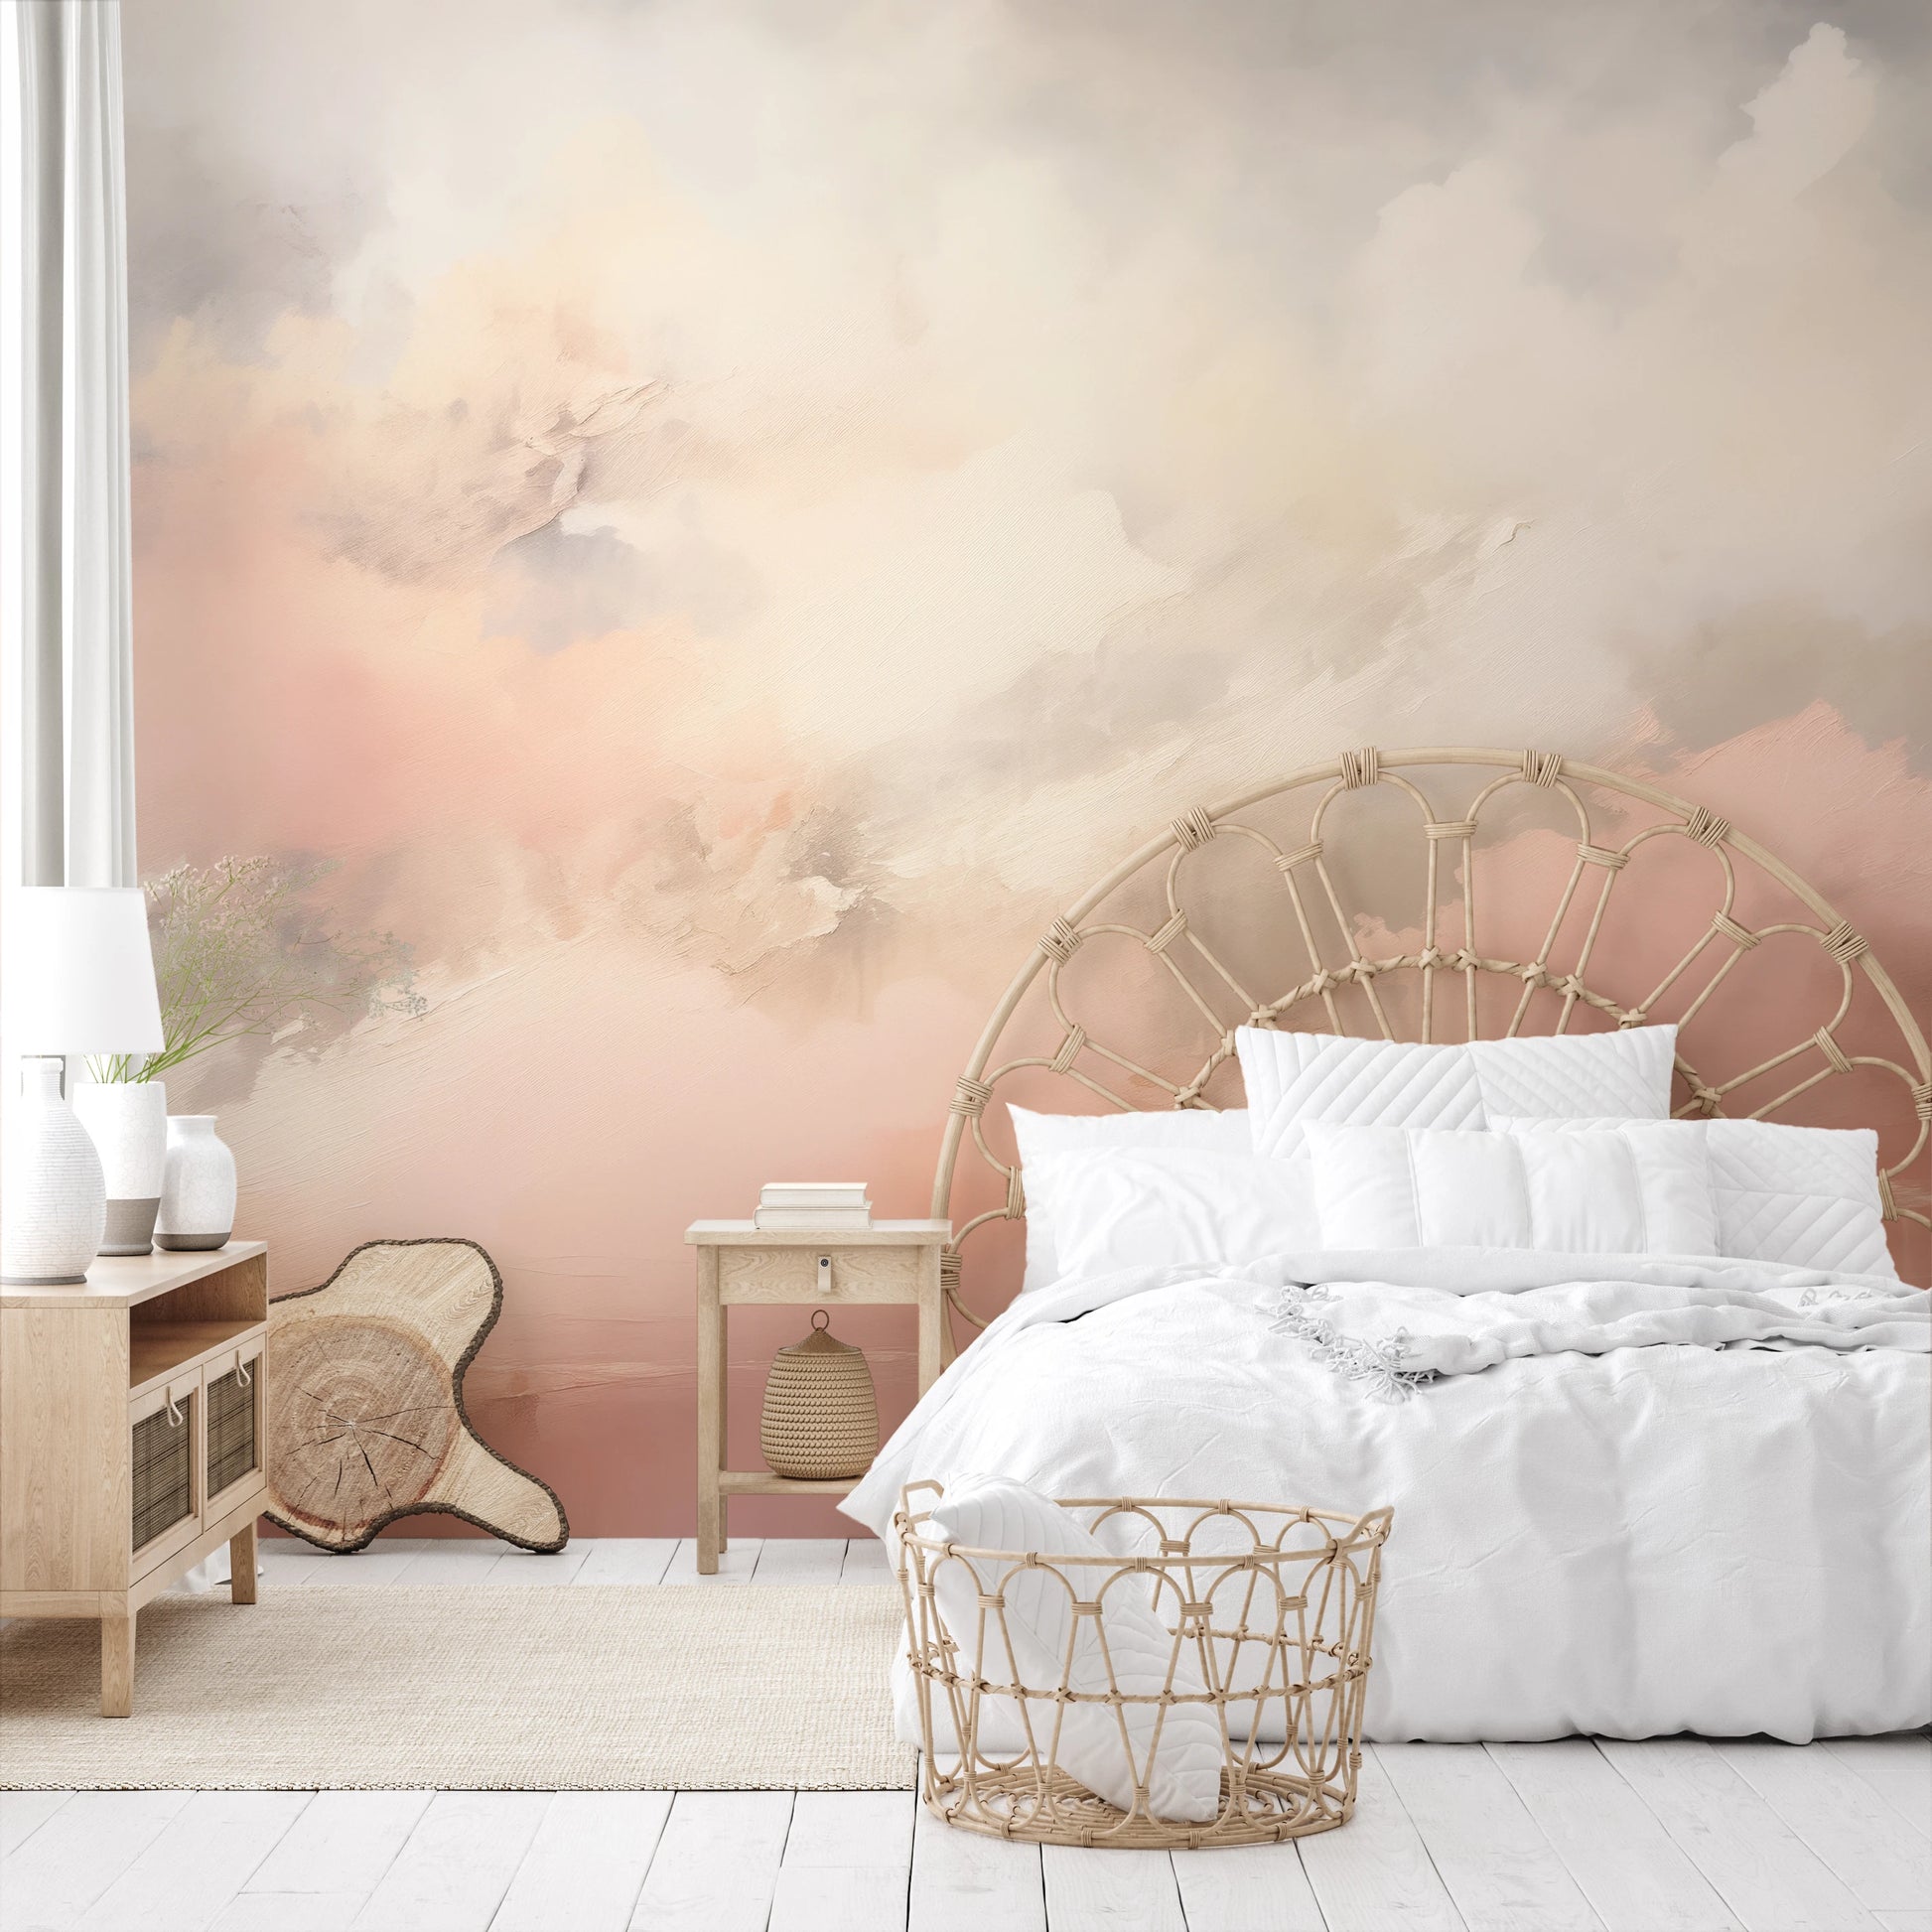 Fototapeta malowana o nazwie Soft Mornings pokazana w aranżacji wnętrza.